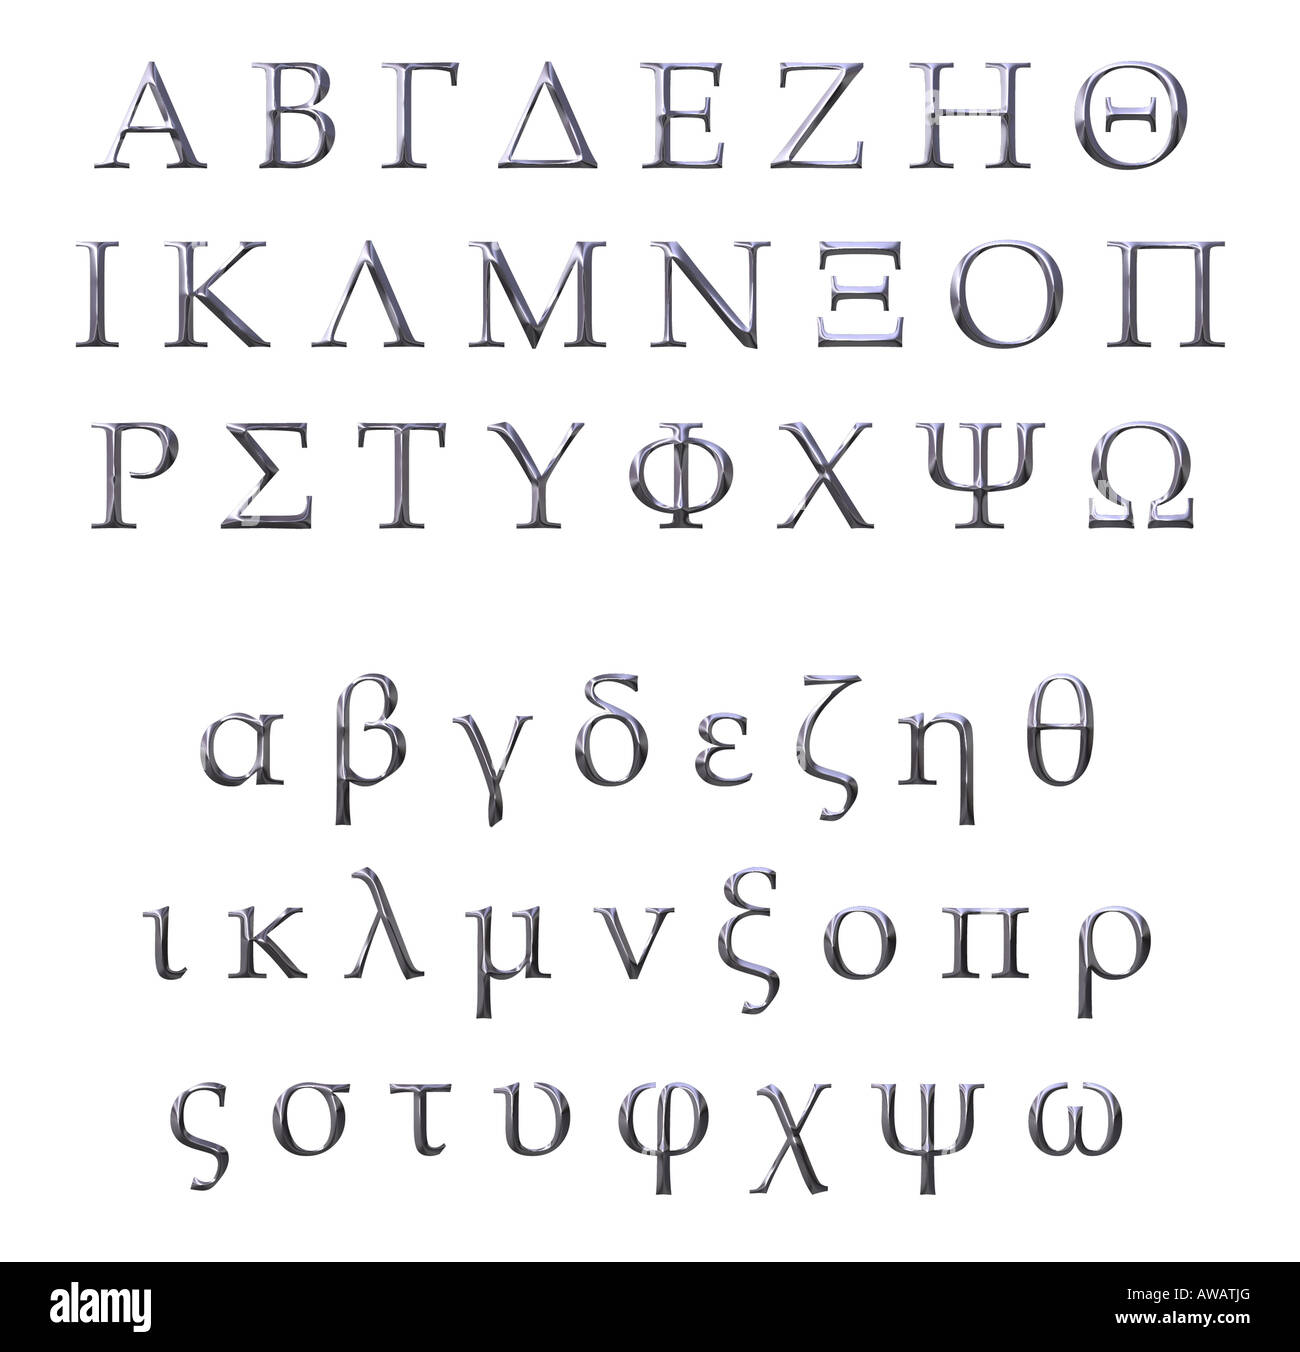 alfabeto-griego-svg-letras-griegas-svg-letras-de-hermandad-svg